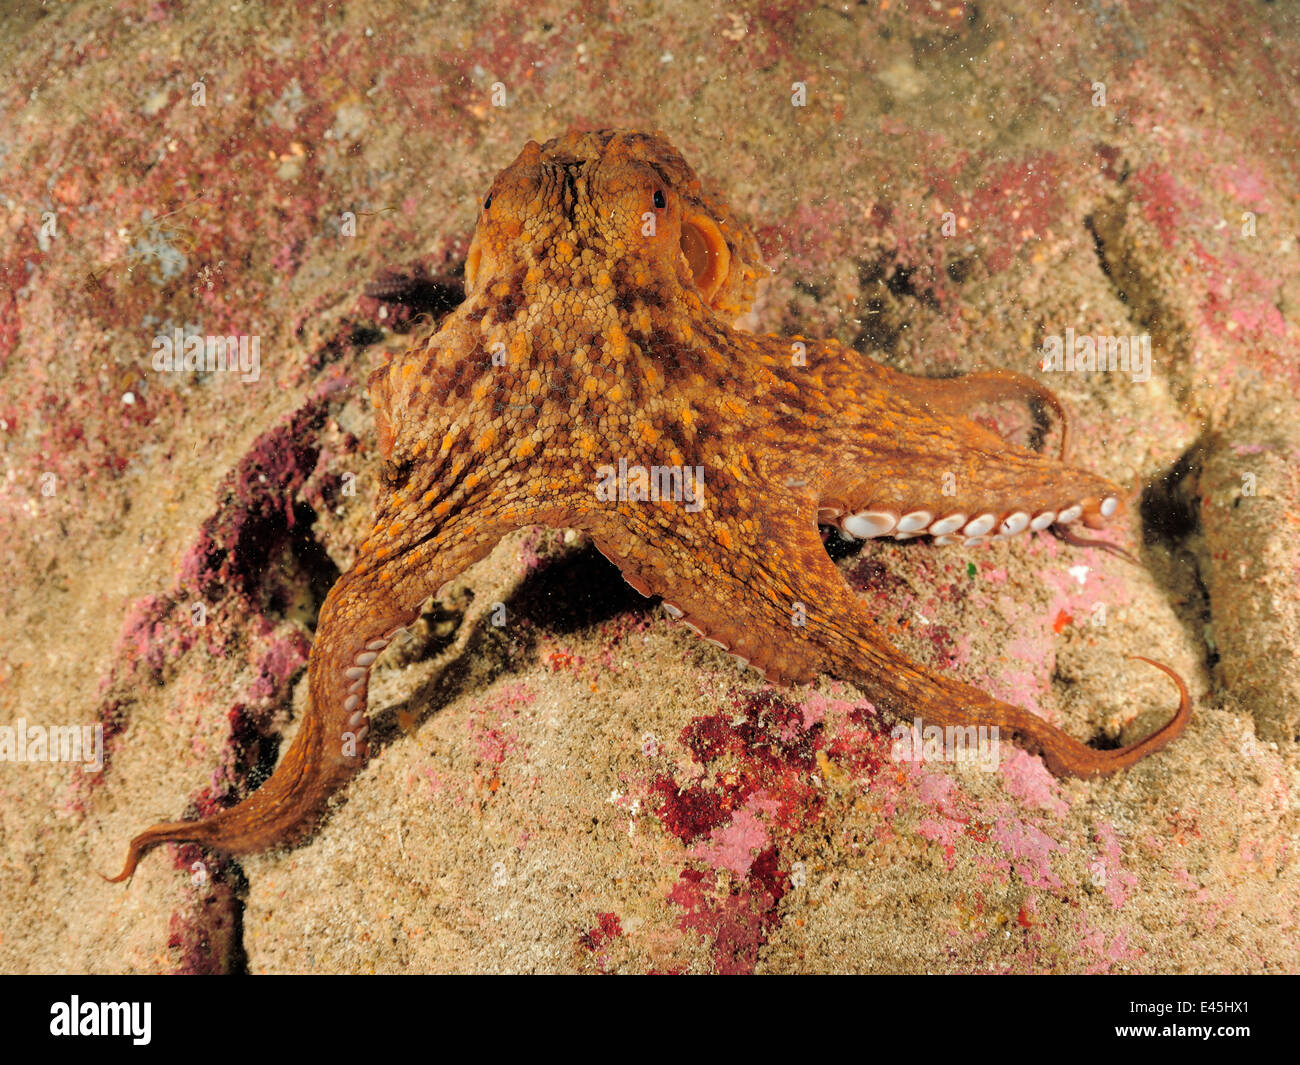 Poulpe commun (Octopus vulgaris) sur la roche, de Malte, de la méditérannée, Mai 2009 Banque D'Images